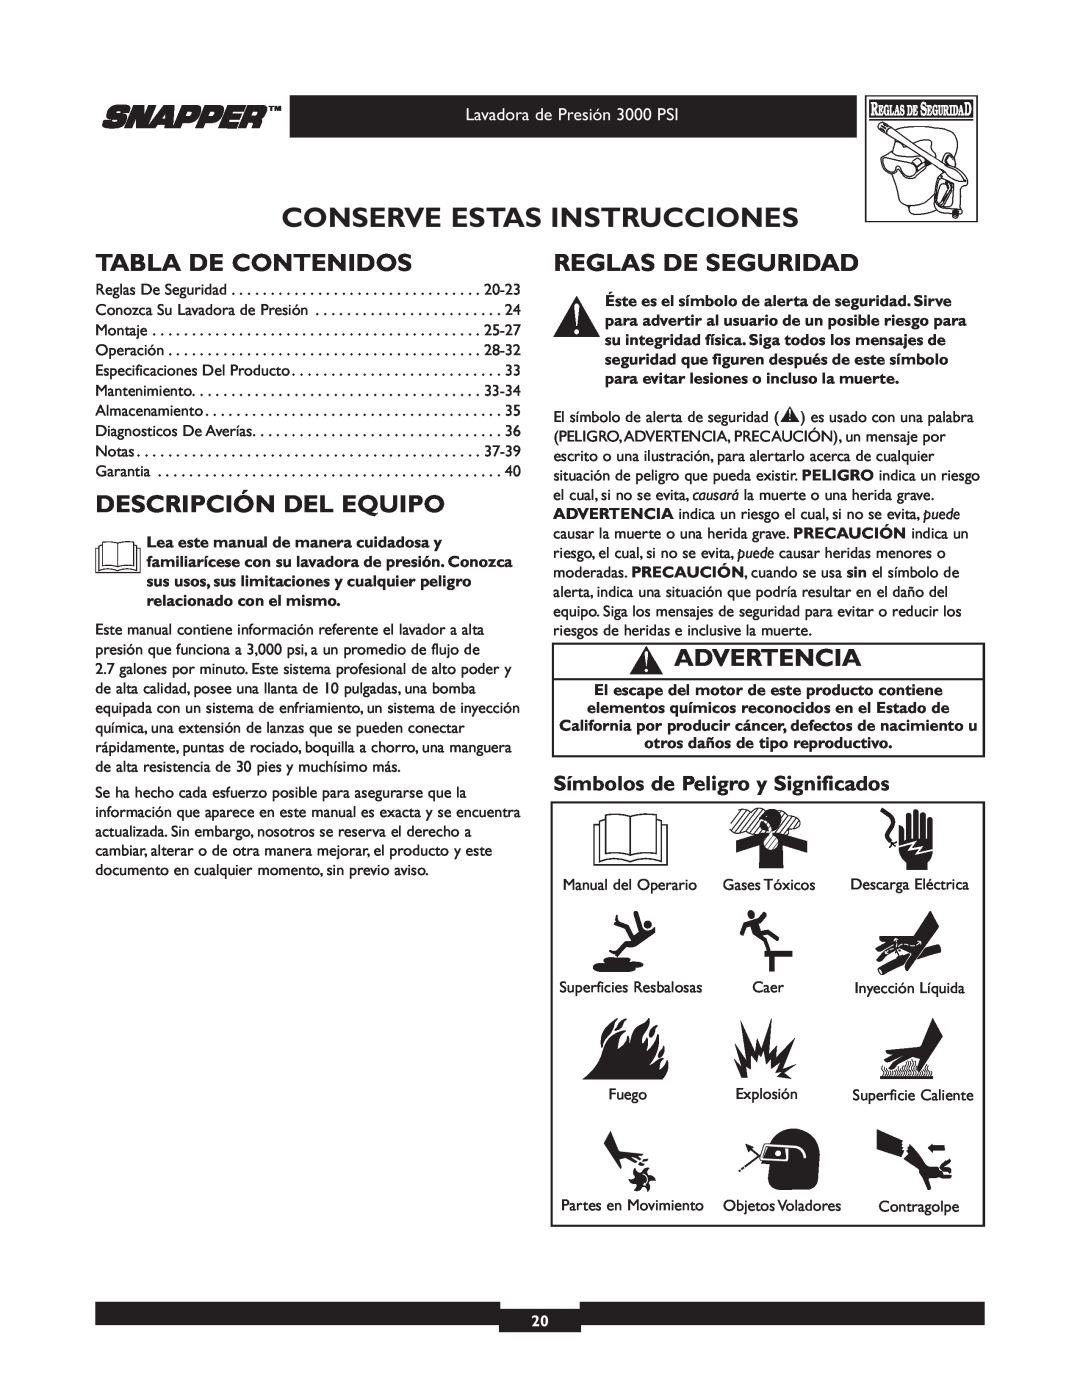 Snapper 020231-2 manual Conserve Estas Instrucciones, Tabla De Contenidos, Descripción Del Equipo, Reglas De Seguridad 